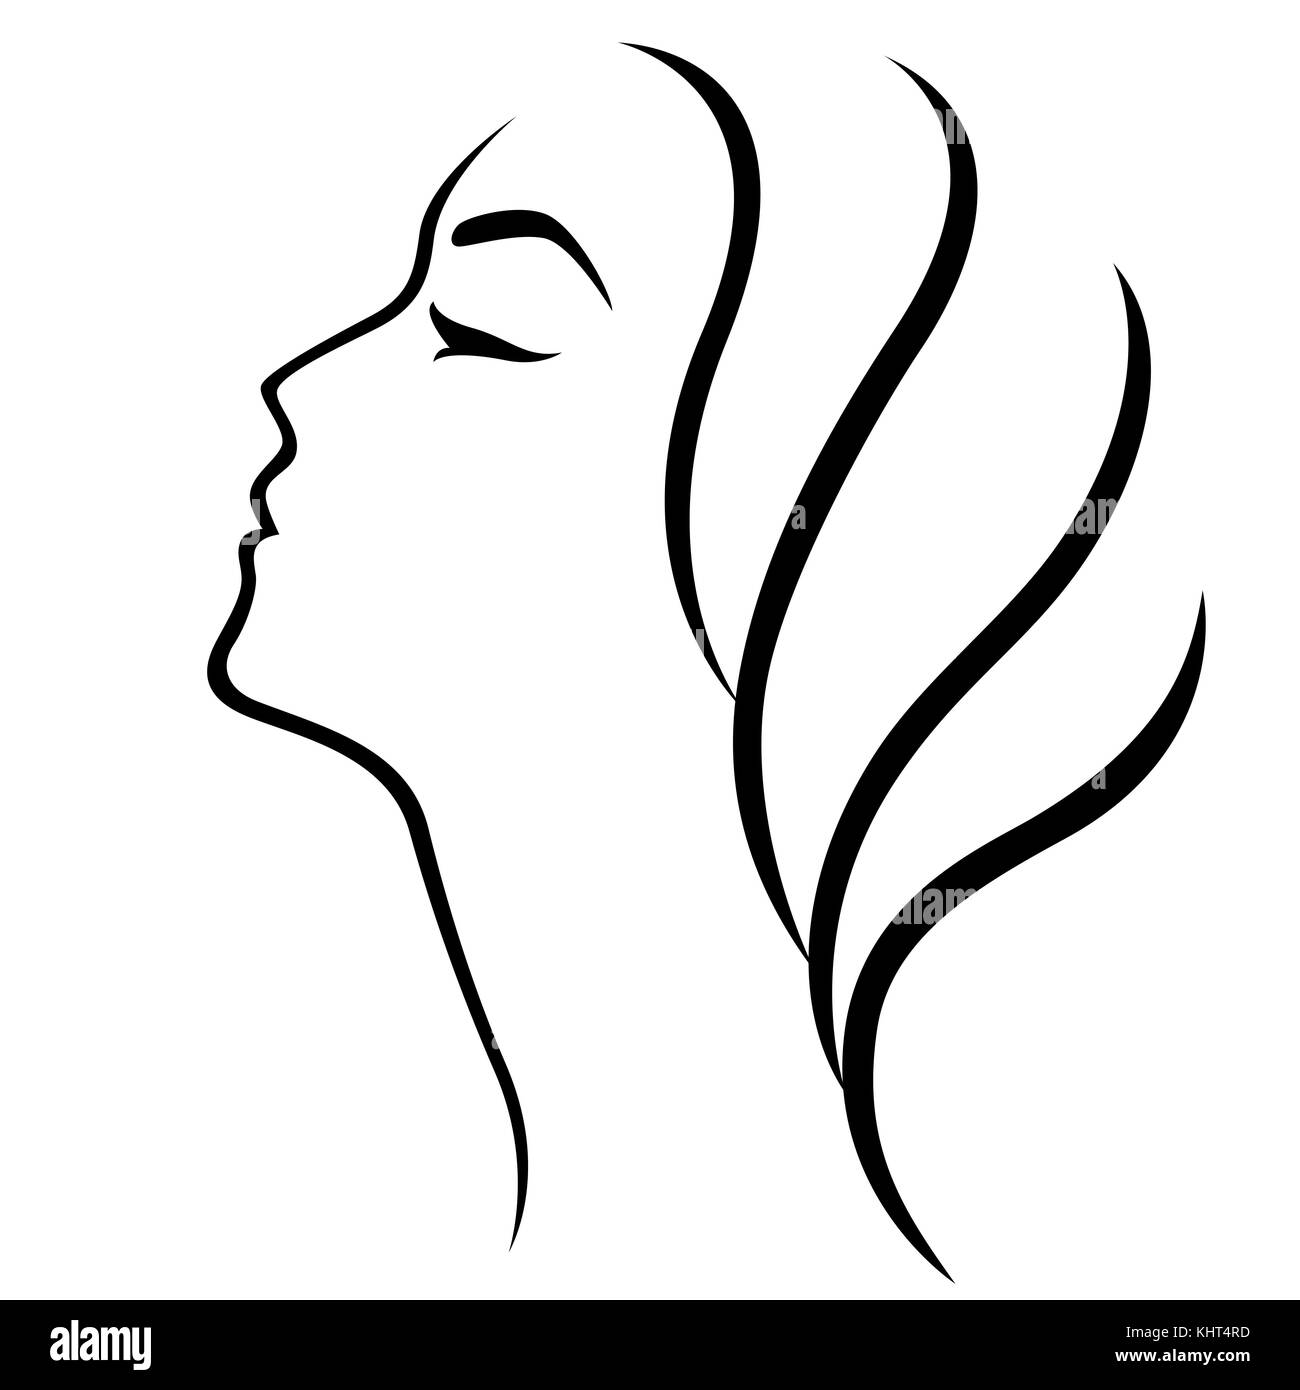 Résumé de la tête d'une femme simple contours, vecteur conception stylisée élément isolé sur fond blanc Illustration de Vecteur